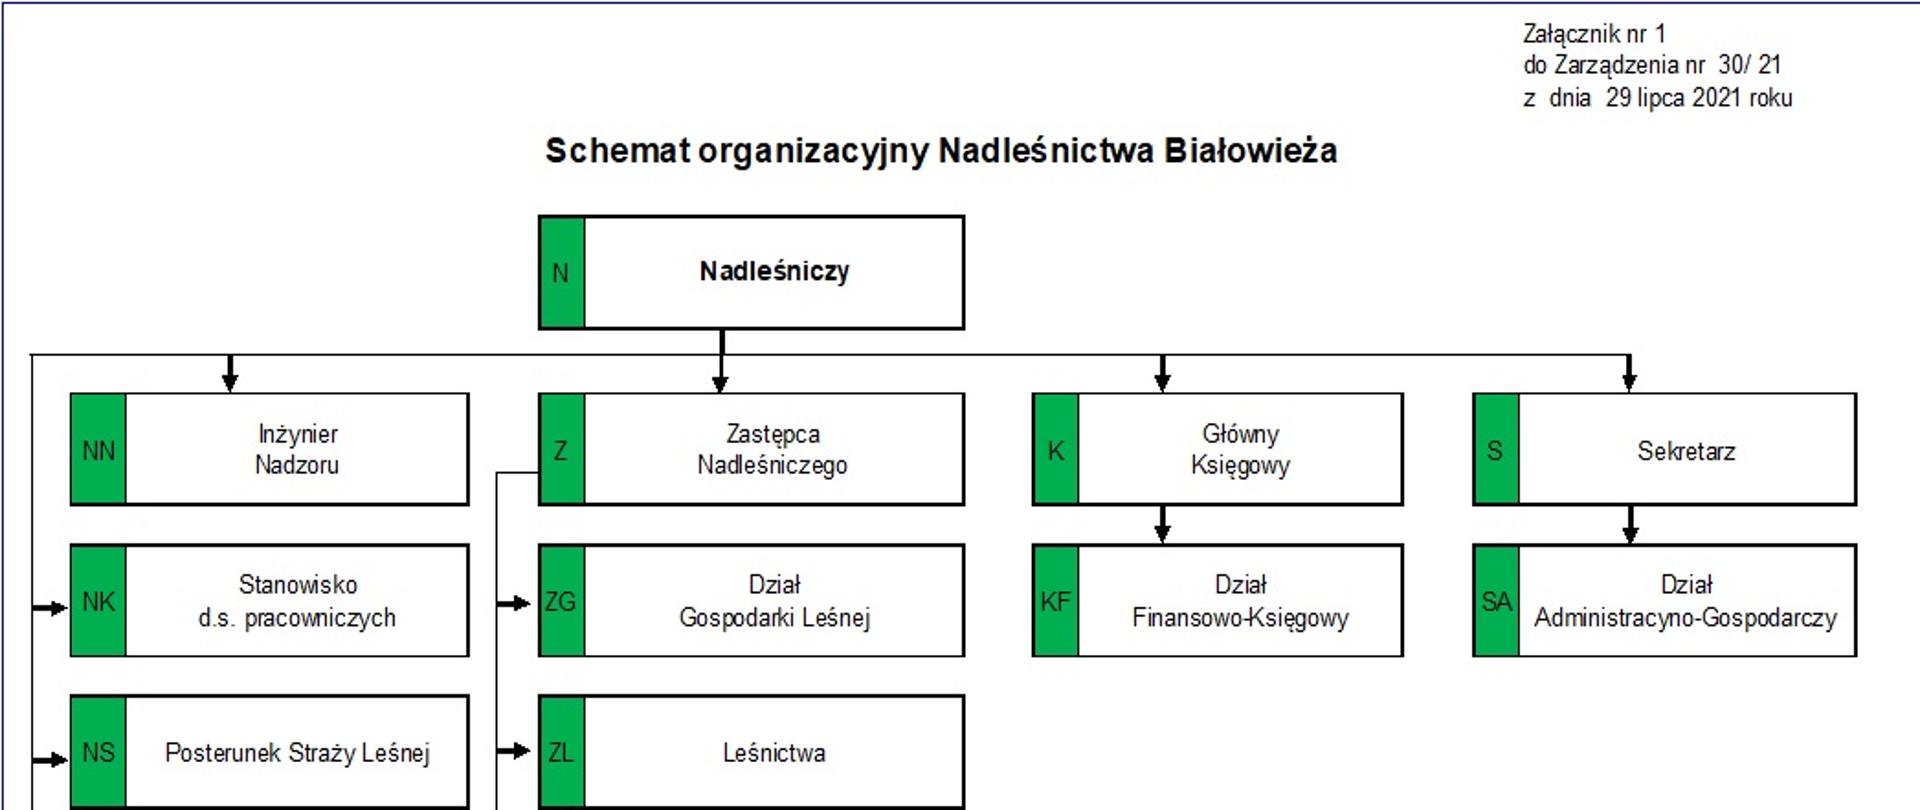 Schemat organizacyjny Nadleśnictwa Białowieża w formie schematu-drzewka określającego zależności służbowe w Nadleśnictwie Białowieża